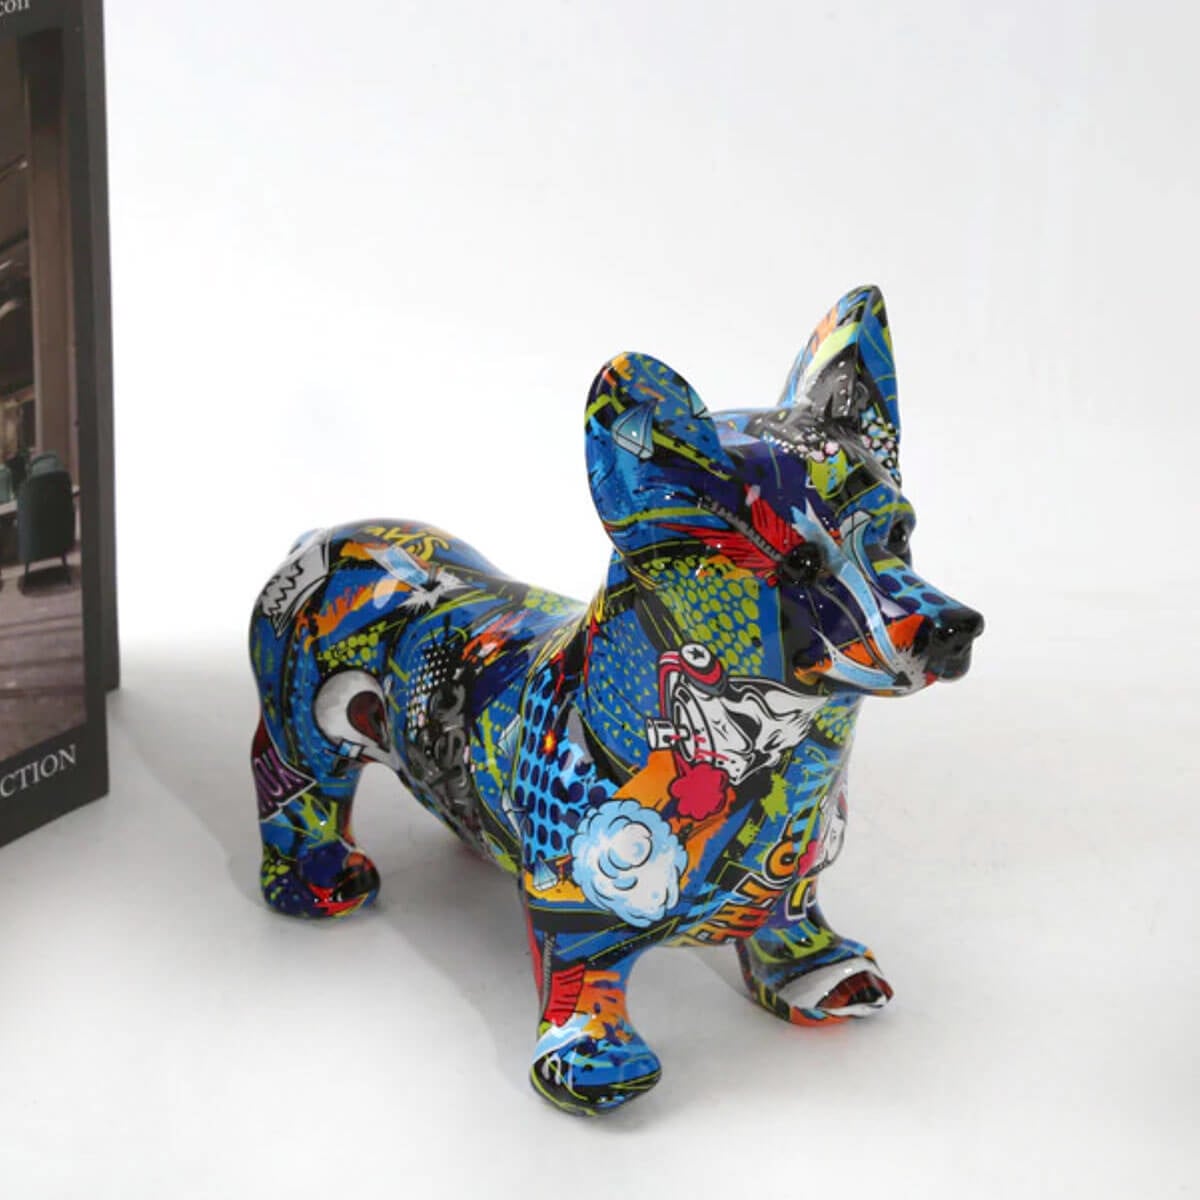 Corgi Dog Statue Kleurrijke Graffiti Art Sculpture